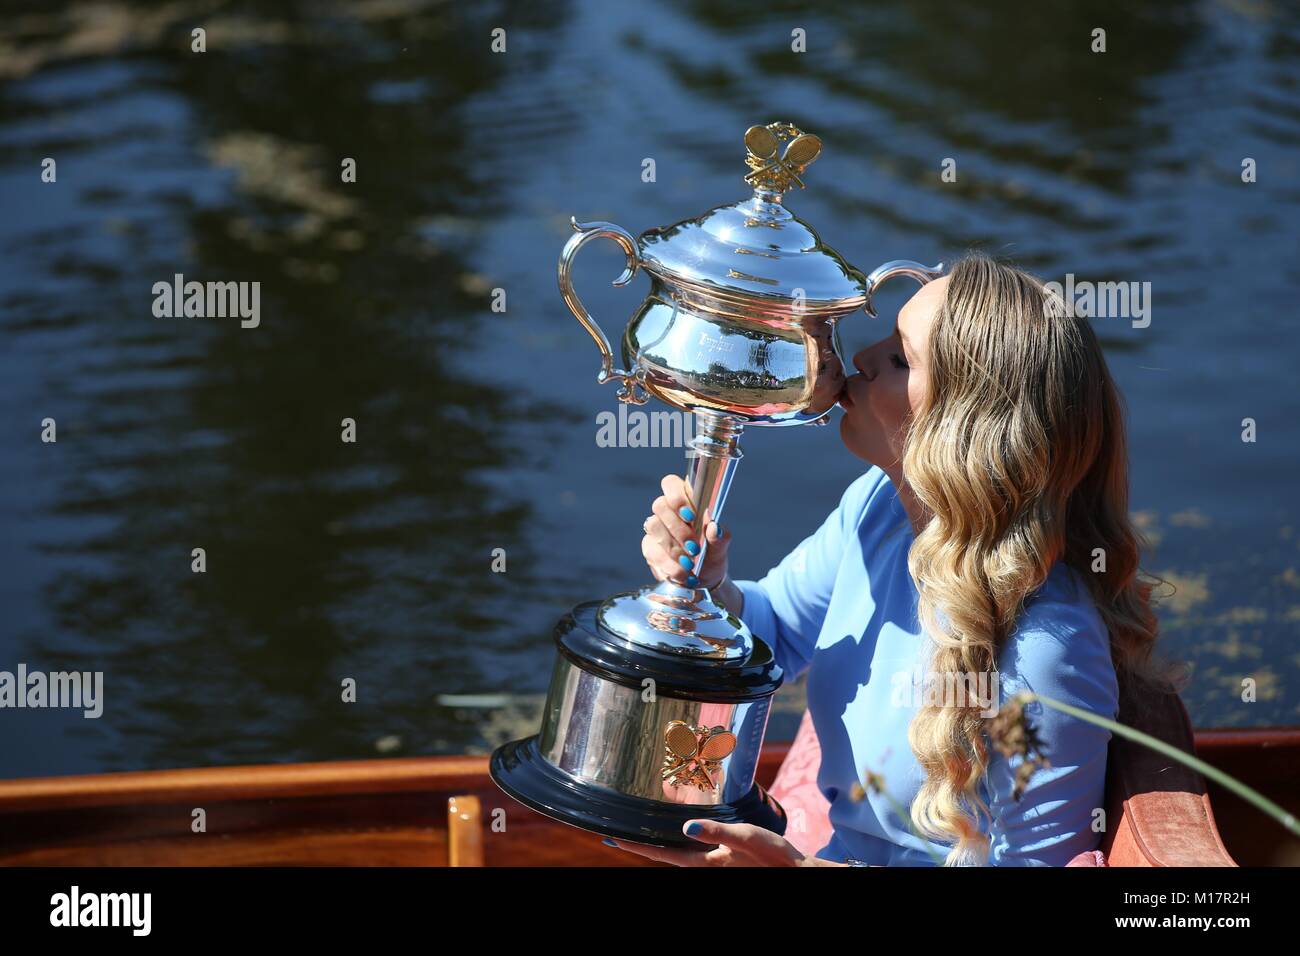 Melbourne, Australia. 28 ene, 2018. Caroline Wozniacki de Dinamarca besa su trofeo del Abierto de Australia, la Daphne Akhurst Memorial Cup en el Real Jardín Botánico de Melbourne, Australia, el 28 de enero, 2018. Crédito: Bai Xuefei/Xinhua/Alamy Live News Foto de stock